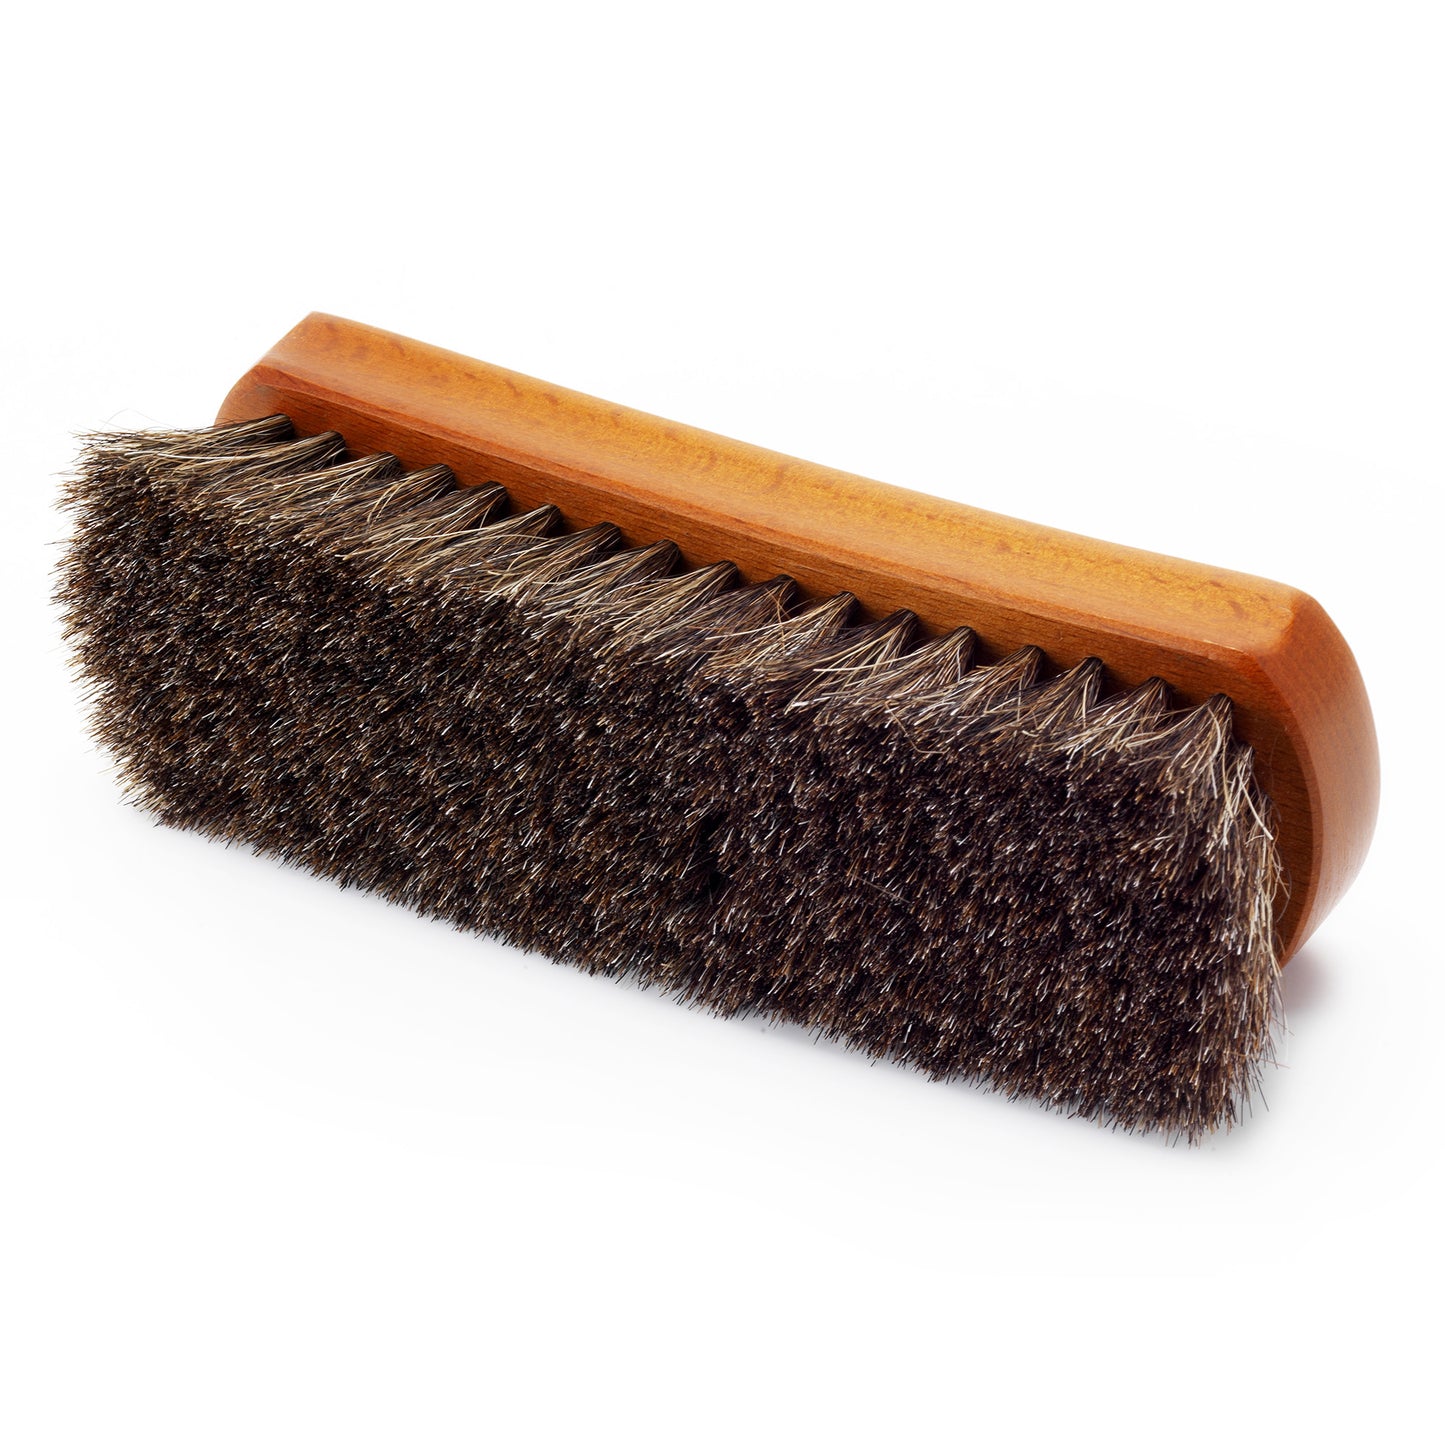 Premium Brown Horsehair Shoe Brush